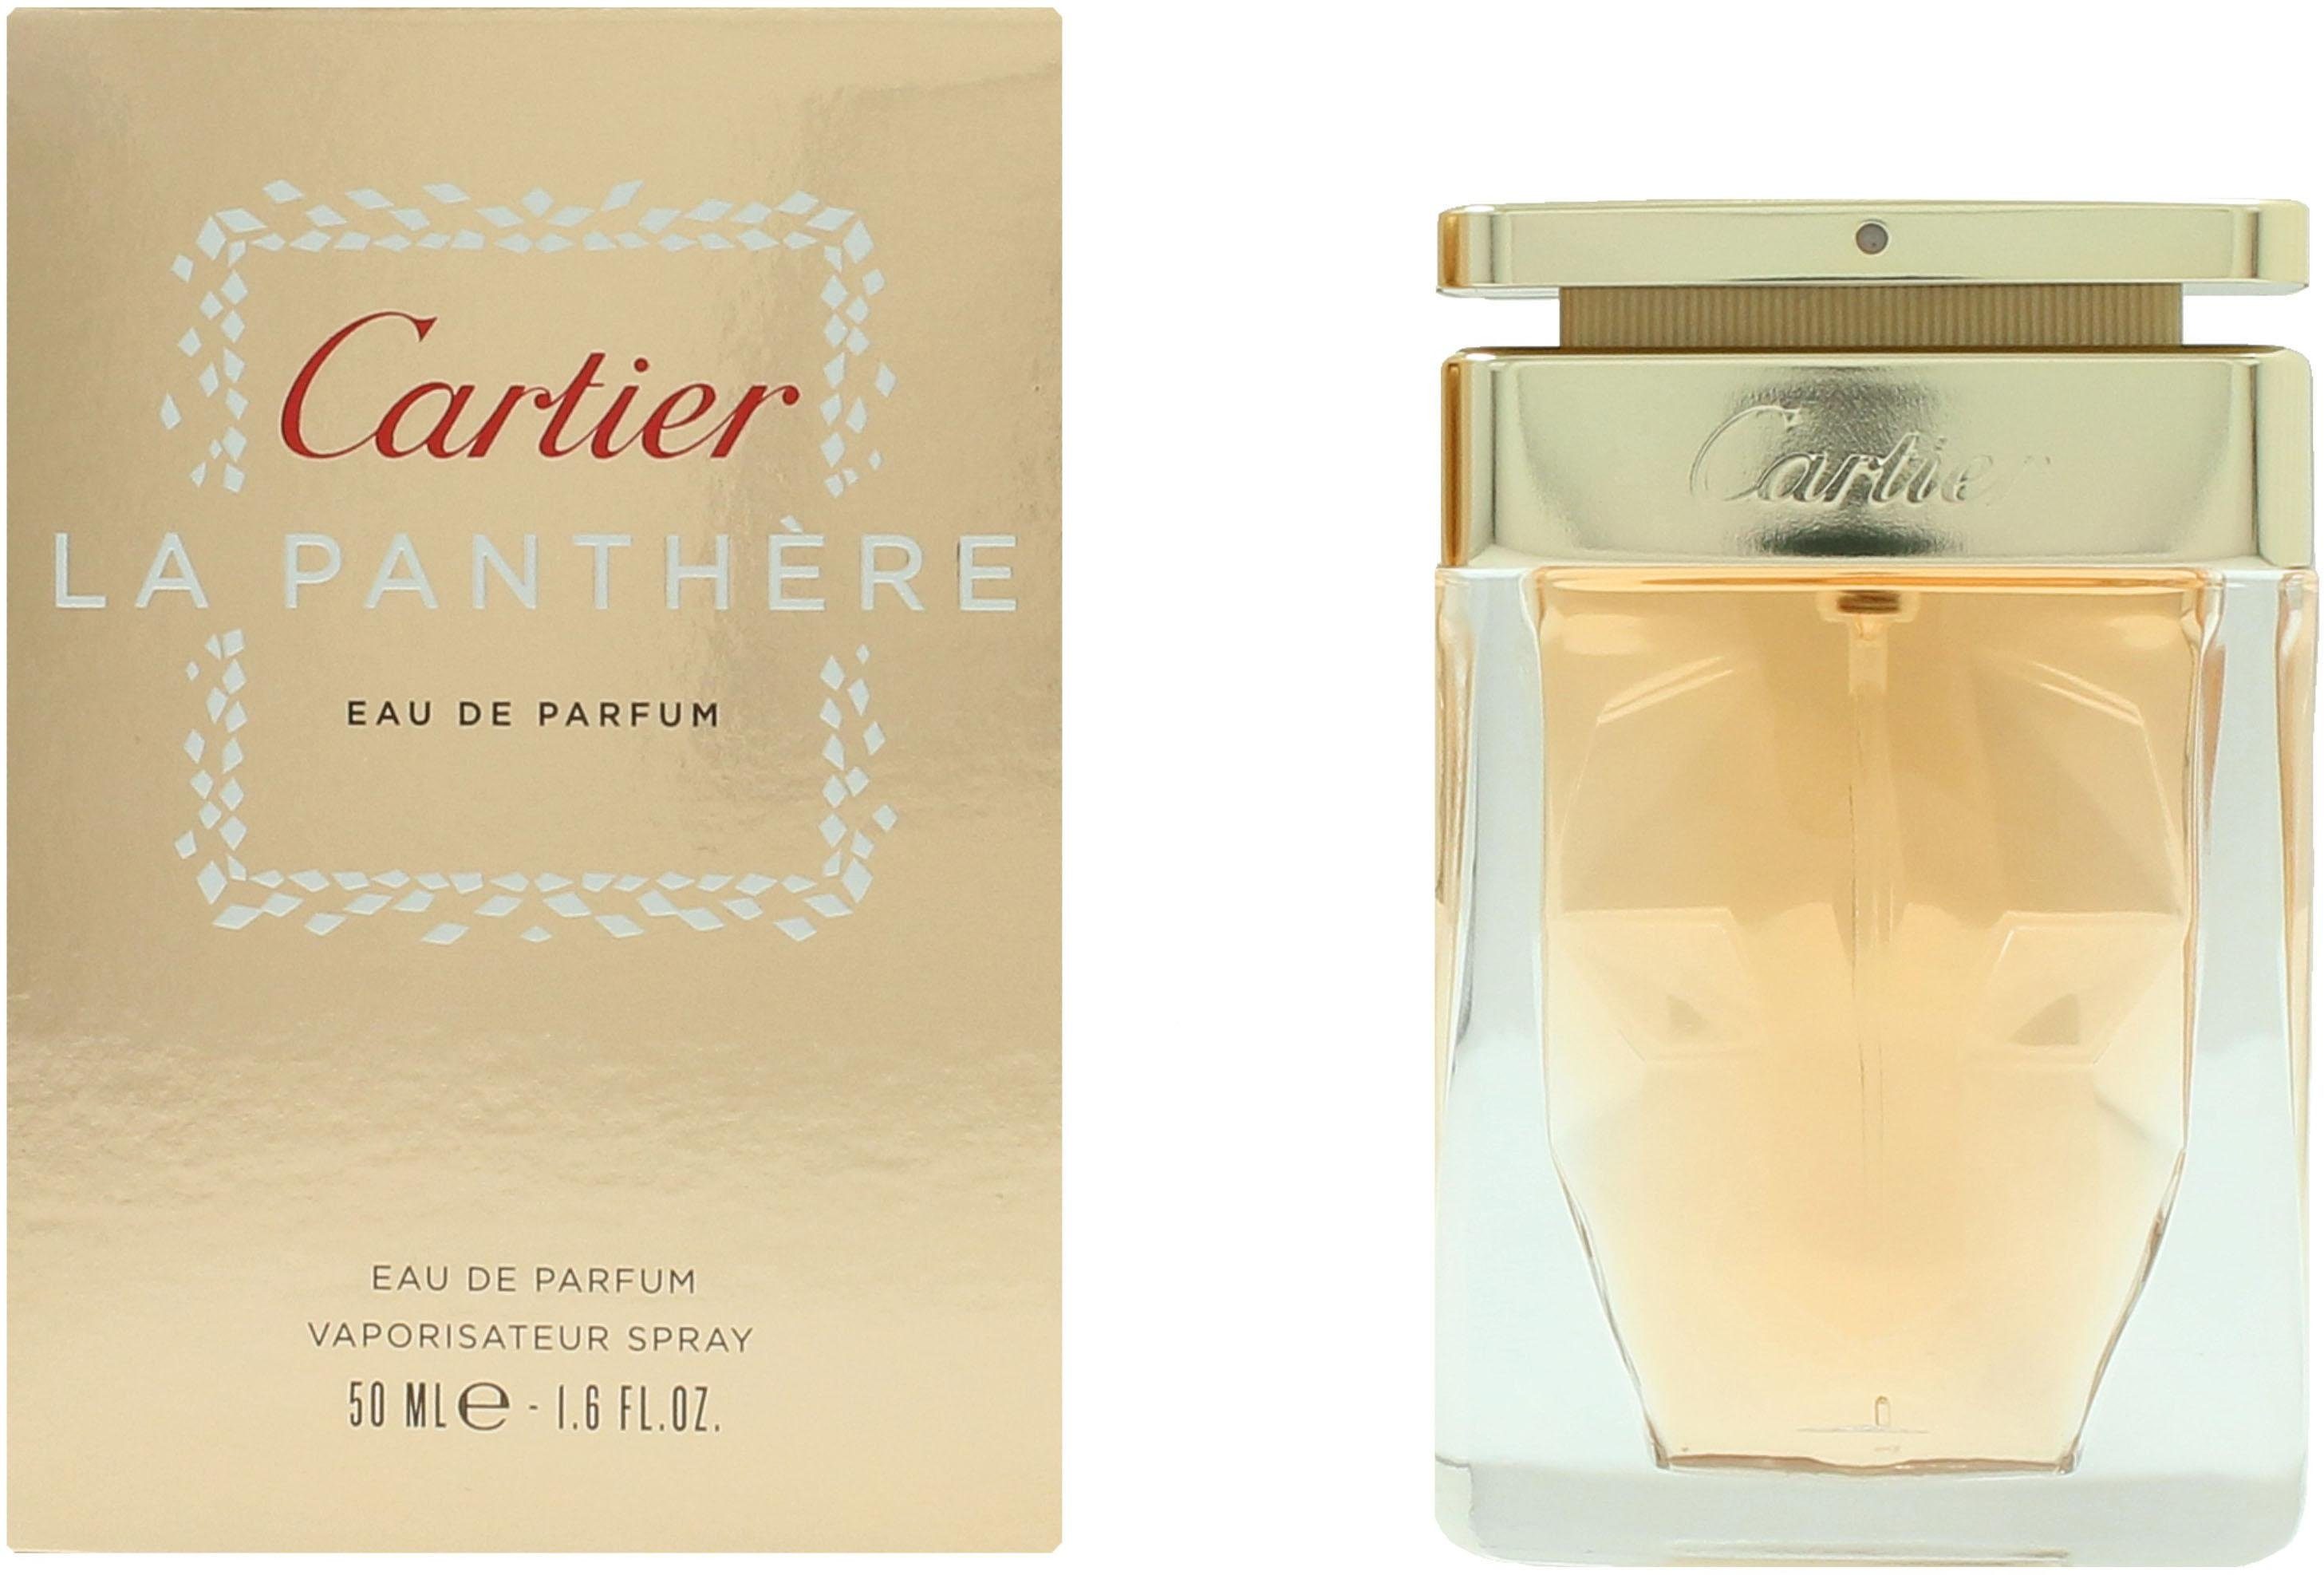 Parfum de Cartier Eau Cartier Panthere La